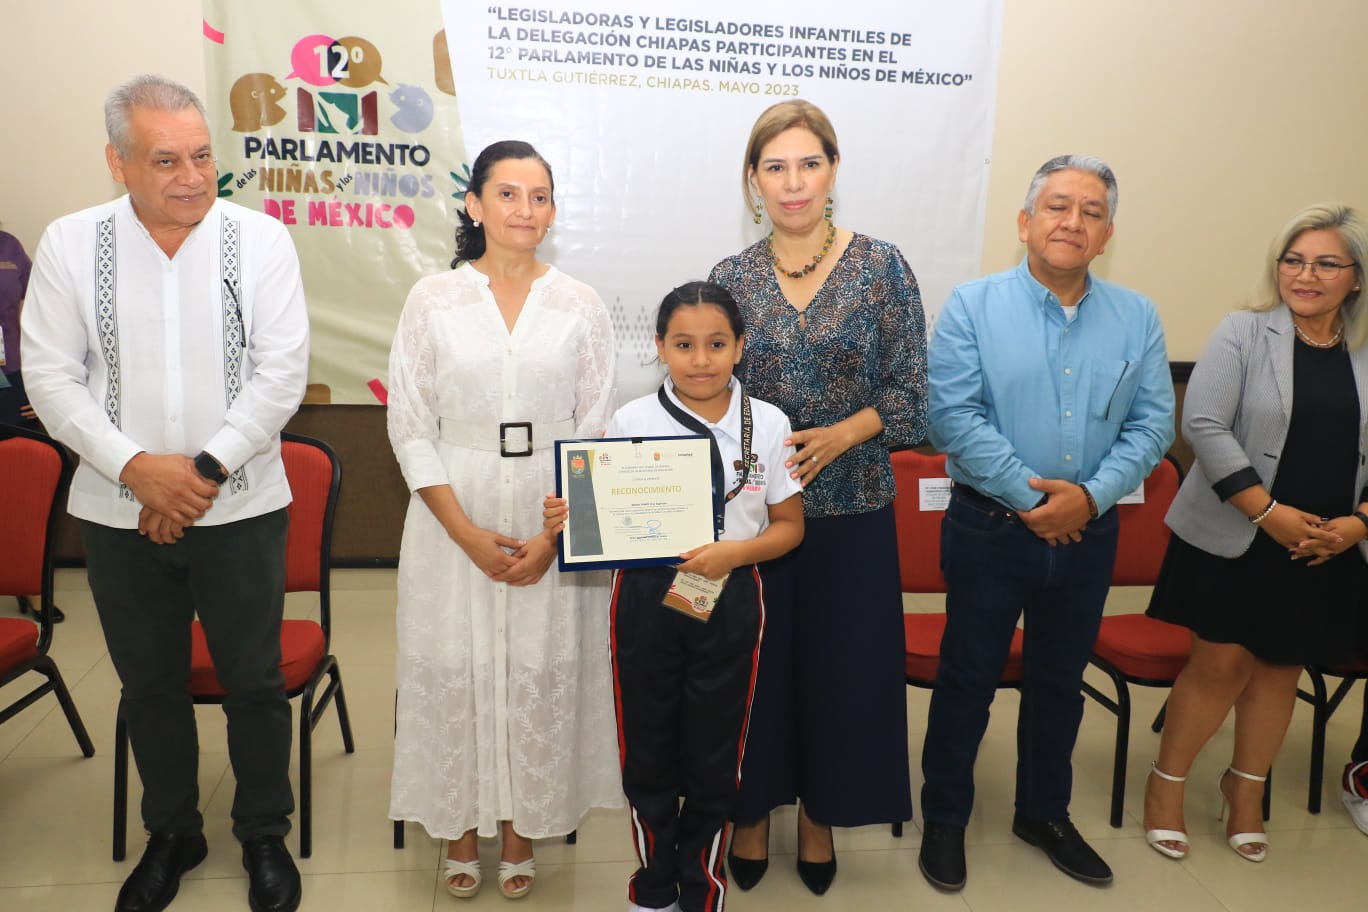 Secretaria de Educación reconoce a representantes de Chiapas en el 12º Parlamento de las y los Niños de México